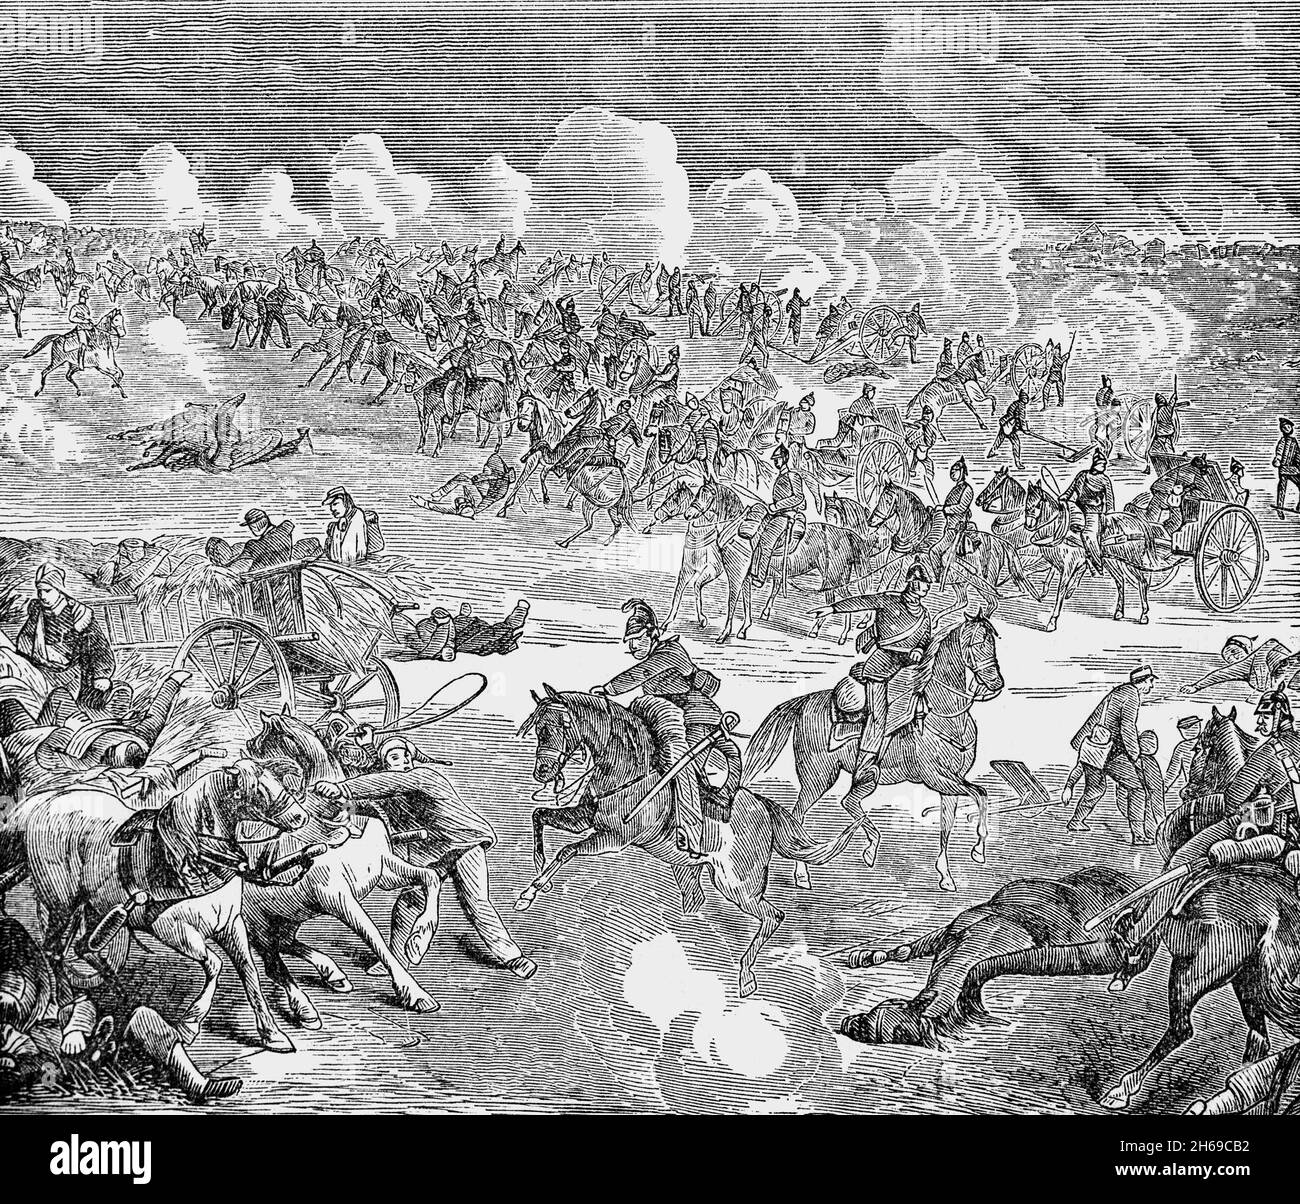 Un'illustrazione del tardo XIX secolo della Battaglia di Königgrätz (alias Sadowa), una battaglia decisiva della guerra austro-prussiana in cui il Regno di Prussia sconfisse l'impero austriaco. Si è svolto il 3 luglio 1866, nei pressi delle città boemi di Königgrätz (oggi Hradec Králové, Repubblica Ceca) e Sadowa (oggi Sadová, Repubblica Ceca). La fanteria prussiana, numerata in passato, usò la loro formazione superiore e la dottrina tattica e la pistola ad ago Dreyse per vincere la battaglia e l'intera guerra a Königgrätz da soli. Foto Stock